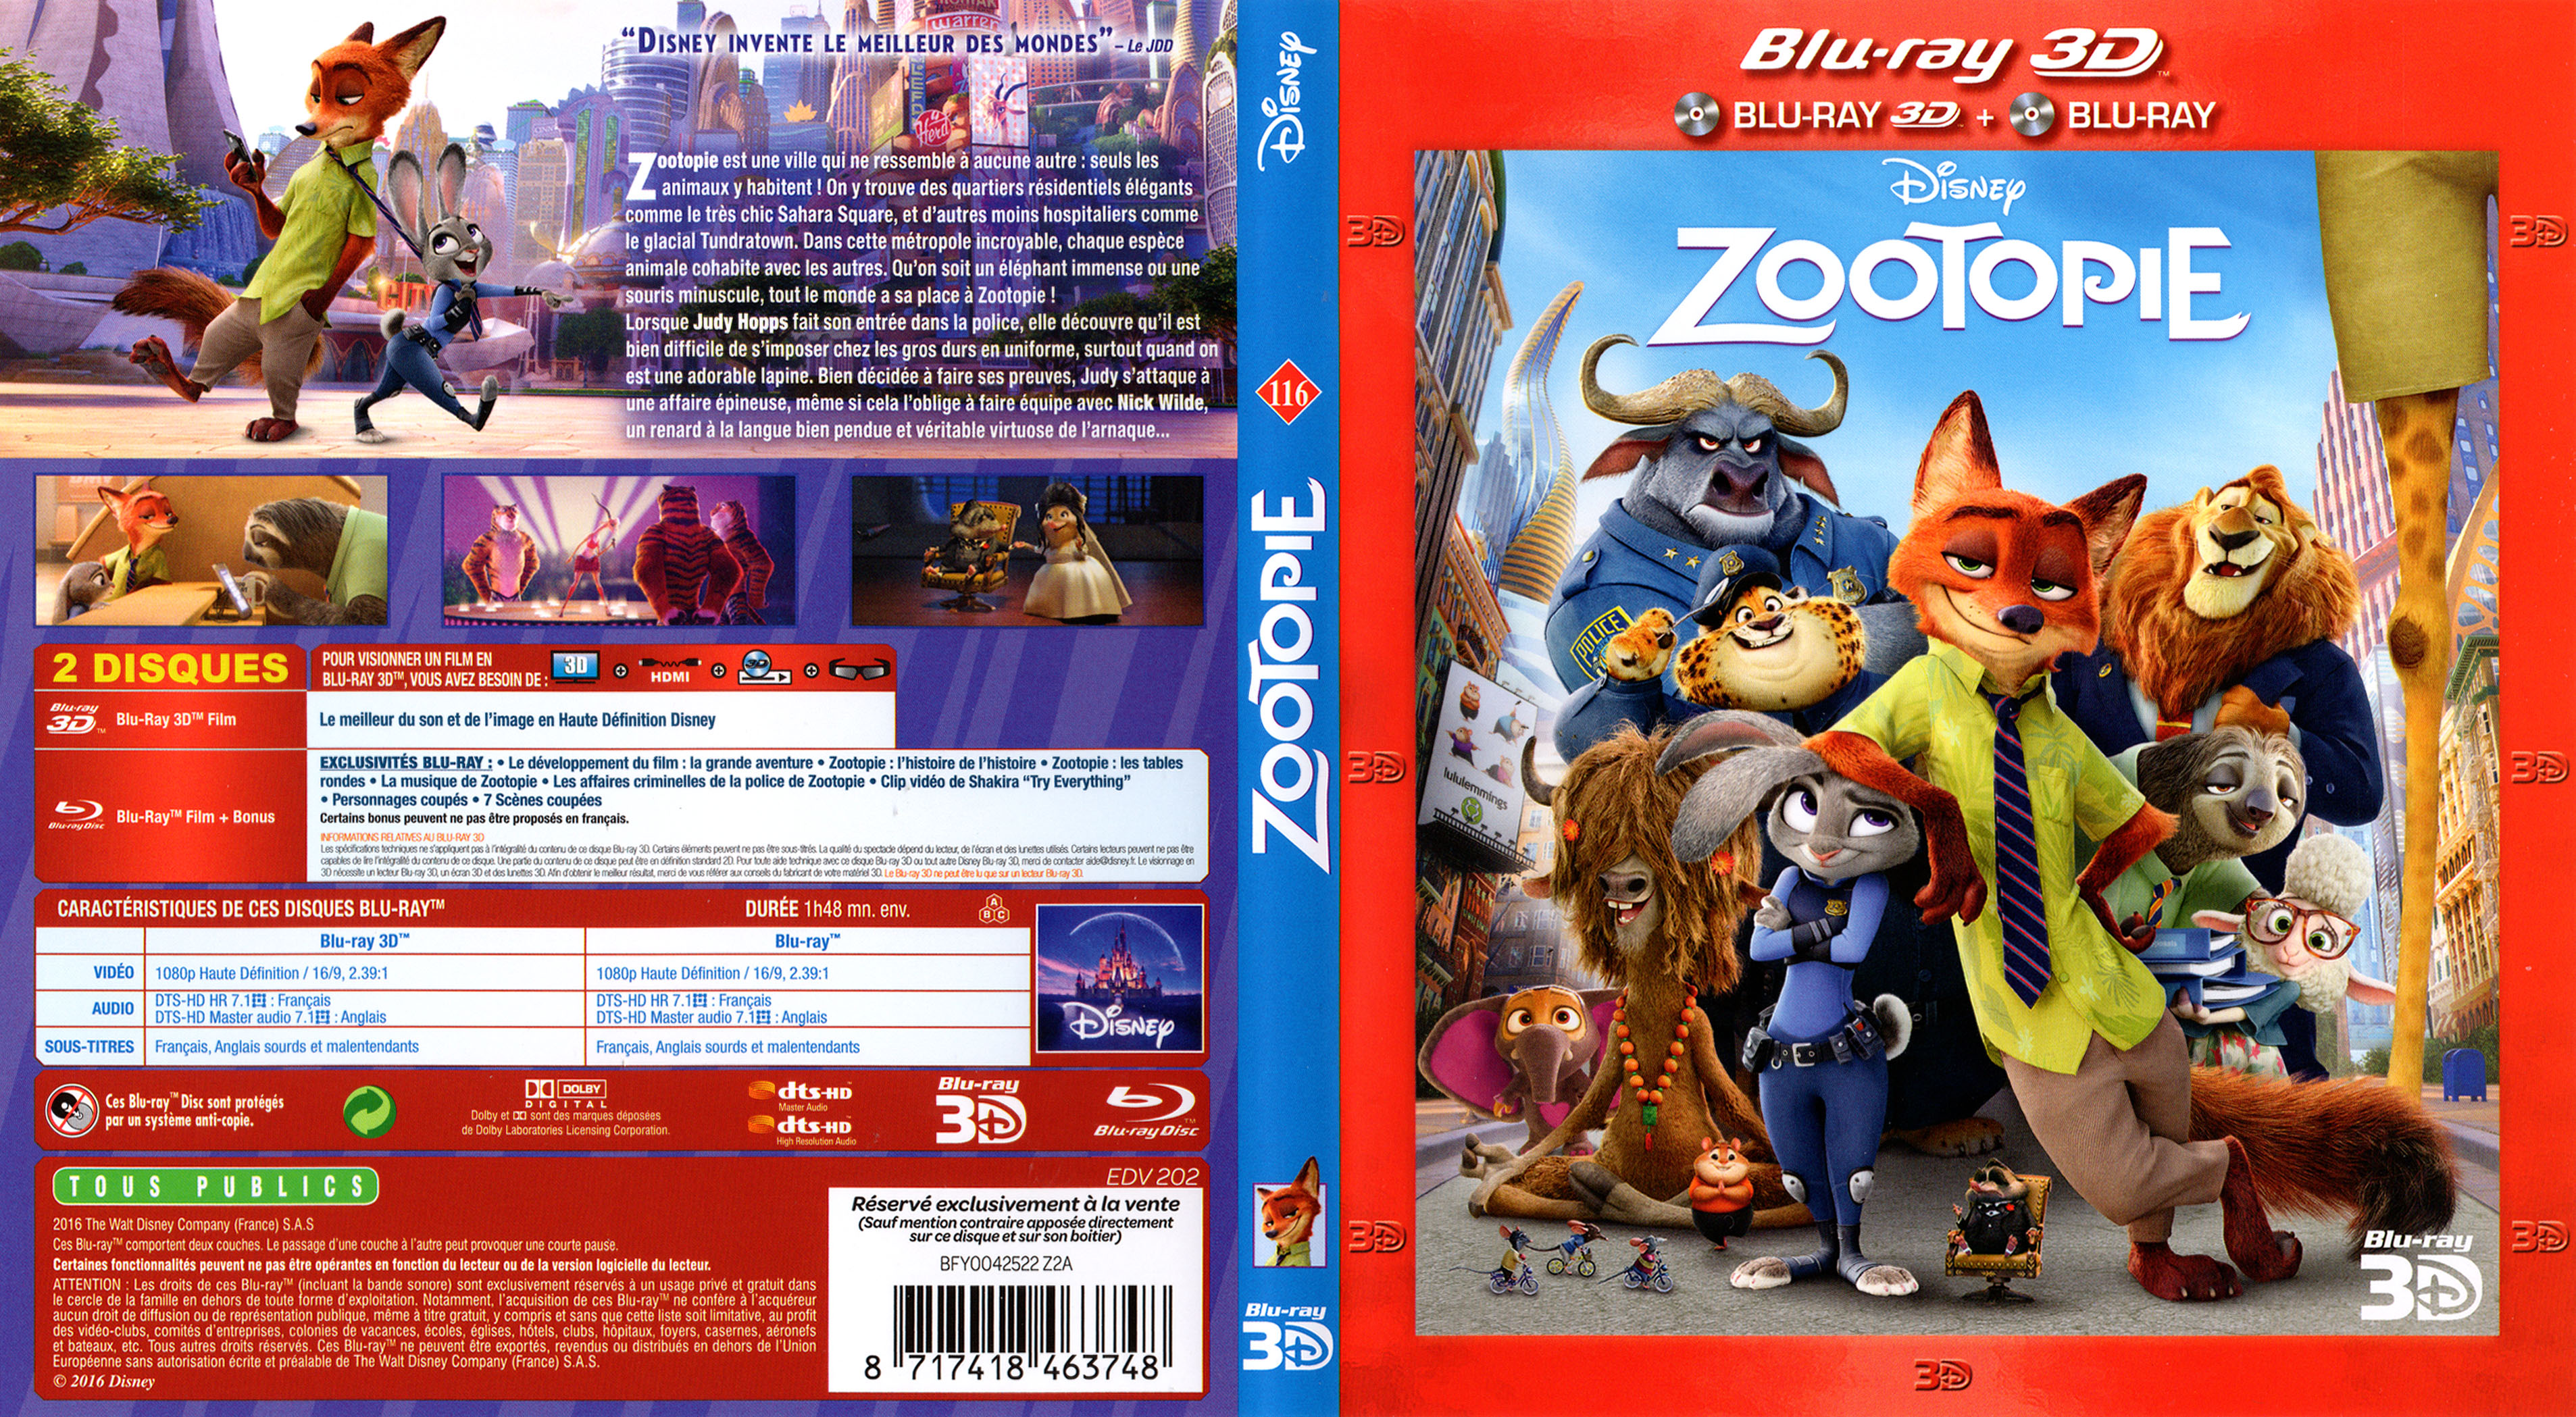 Jaquette DVD Zootopie 3D (BLU-RAY)